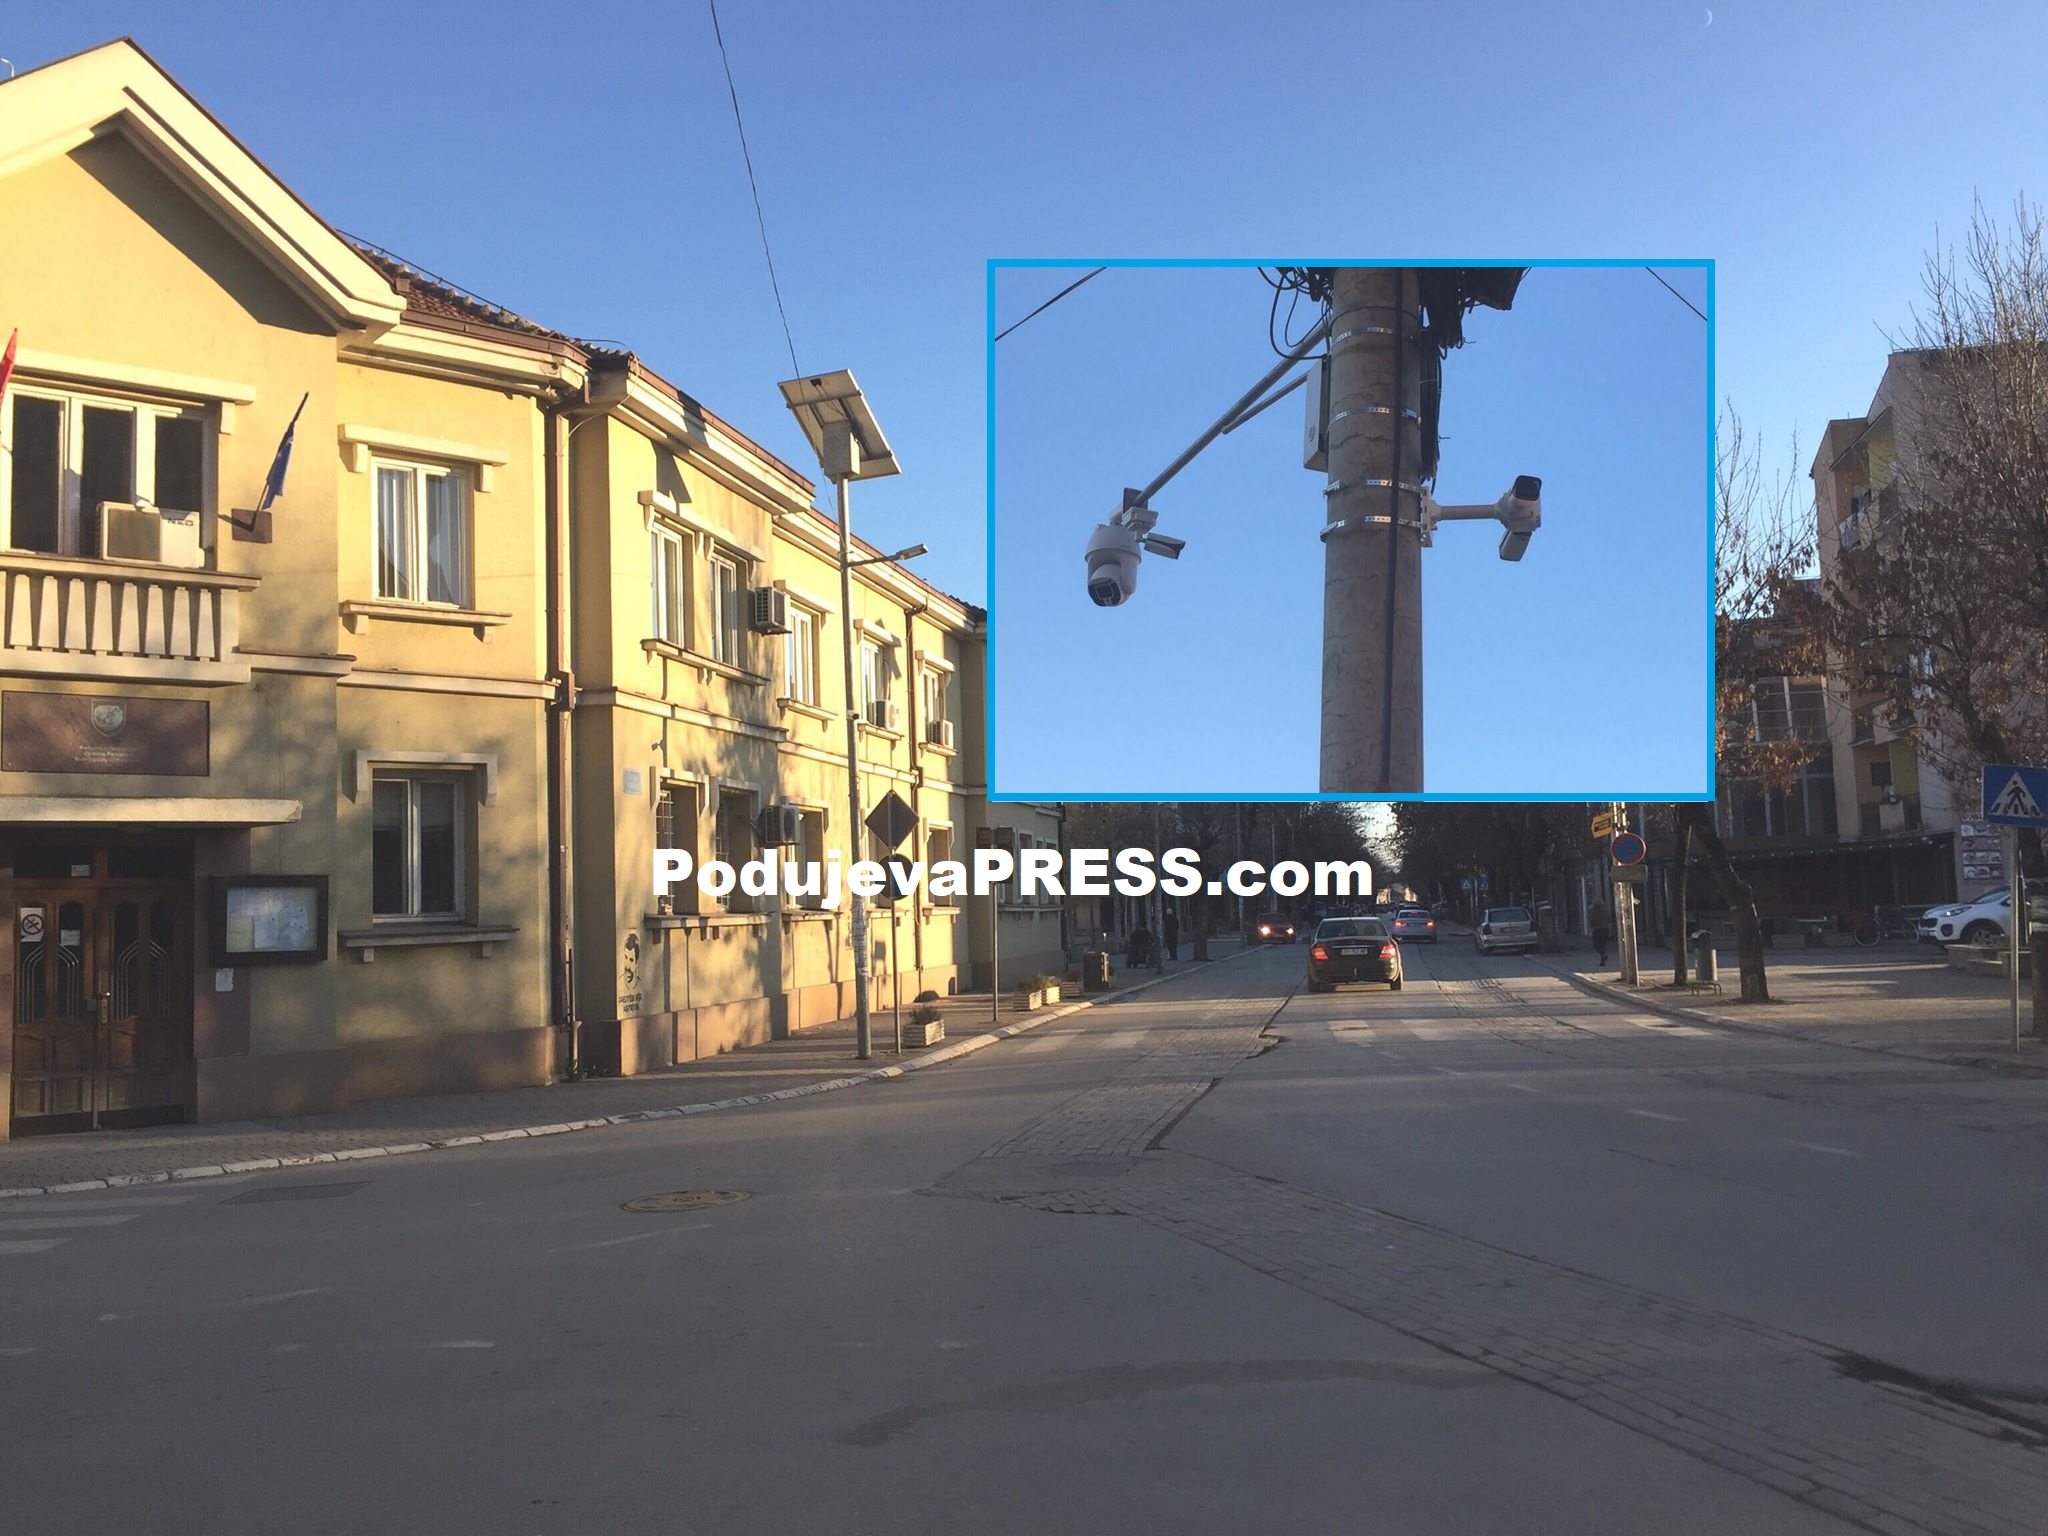  Kjo parti politike në Podujevë është kundër kamerave të sigurisë në rrethrrotullimin e shqiponjës